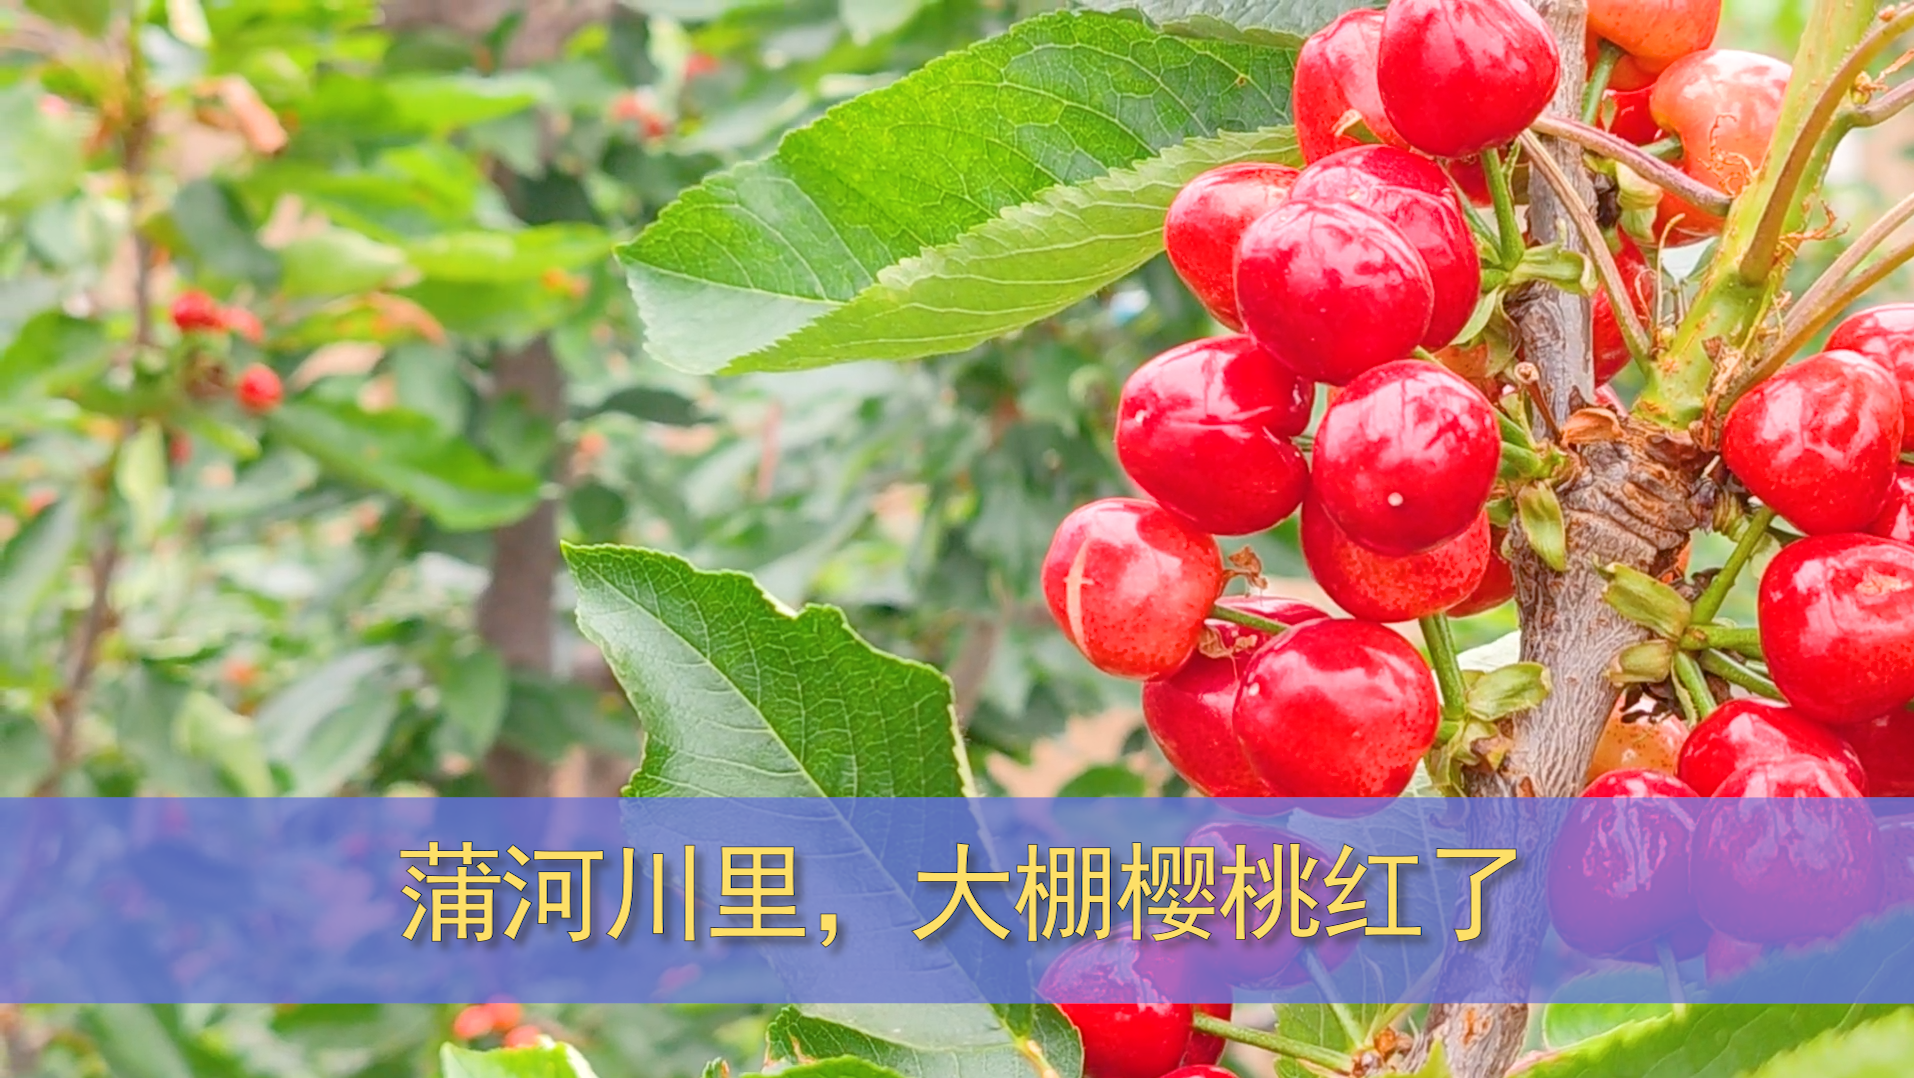 【庆阳视频】蒲河川大棚樱桃抢鲜上市